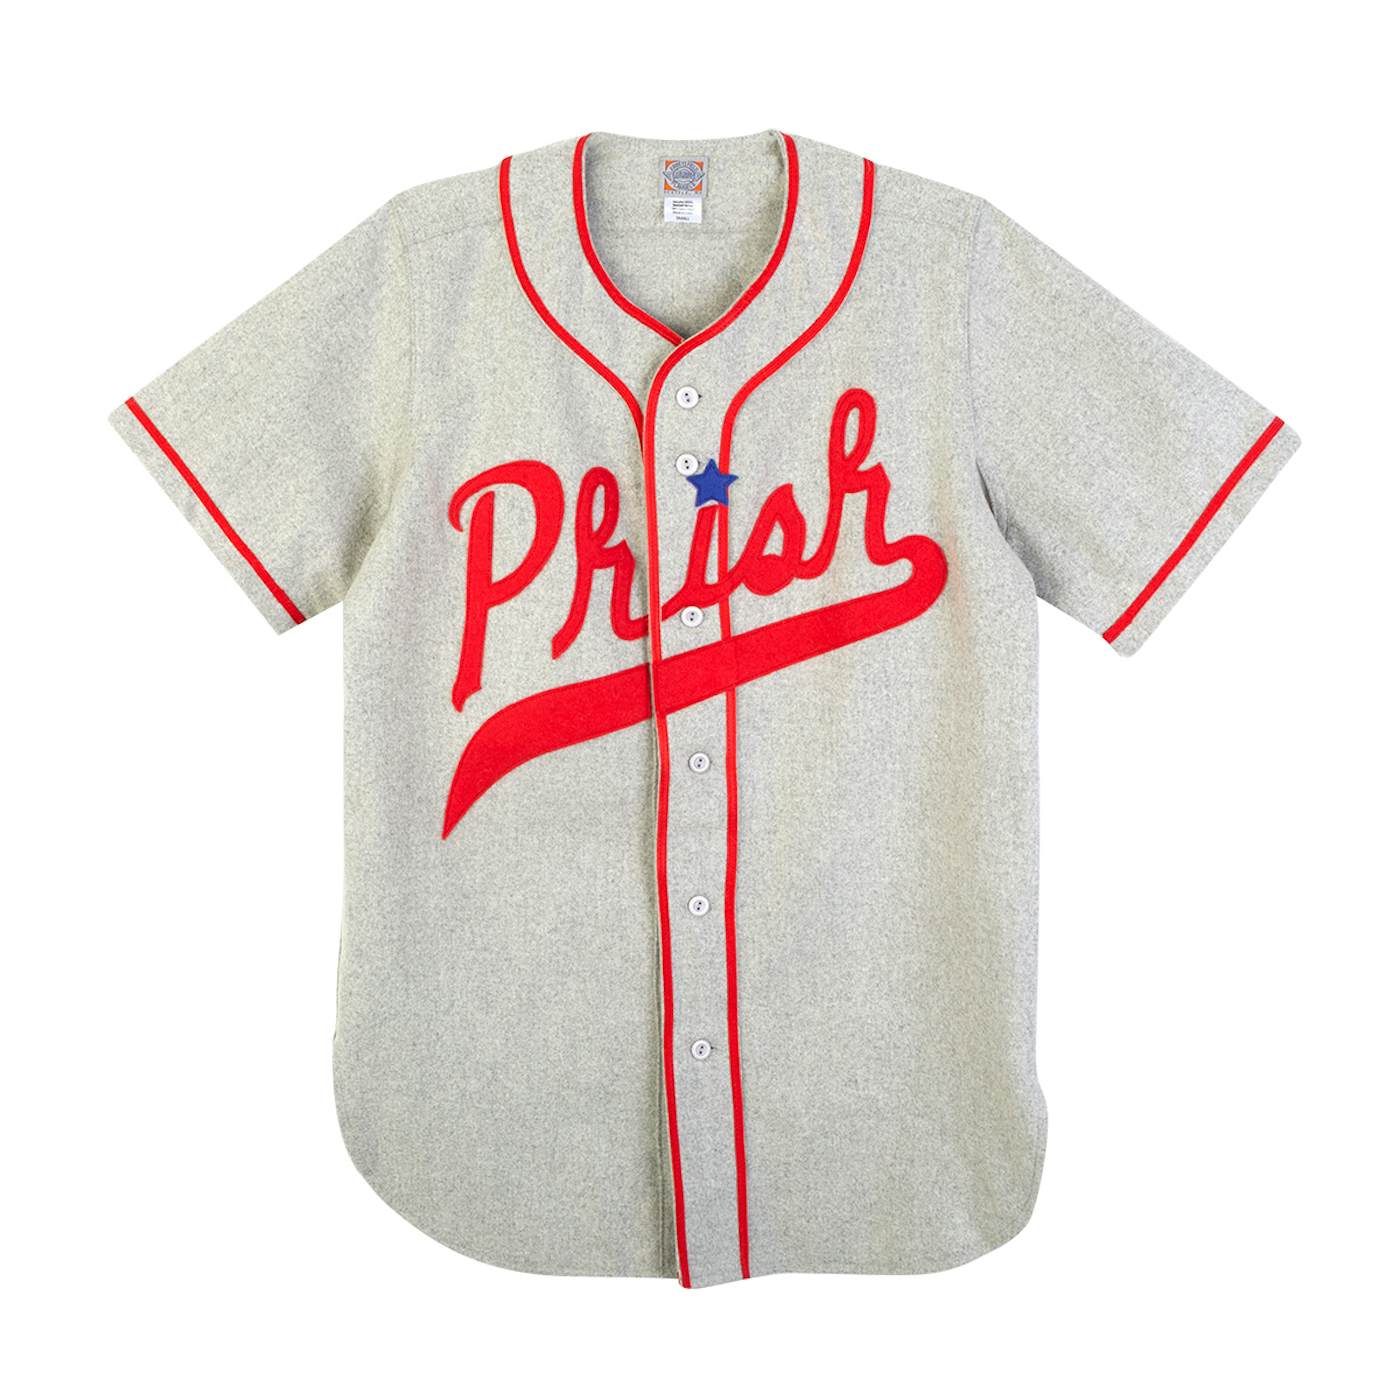 Phish Ebbet's Field Flannels Vintage Boston Jersey